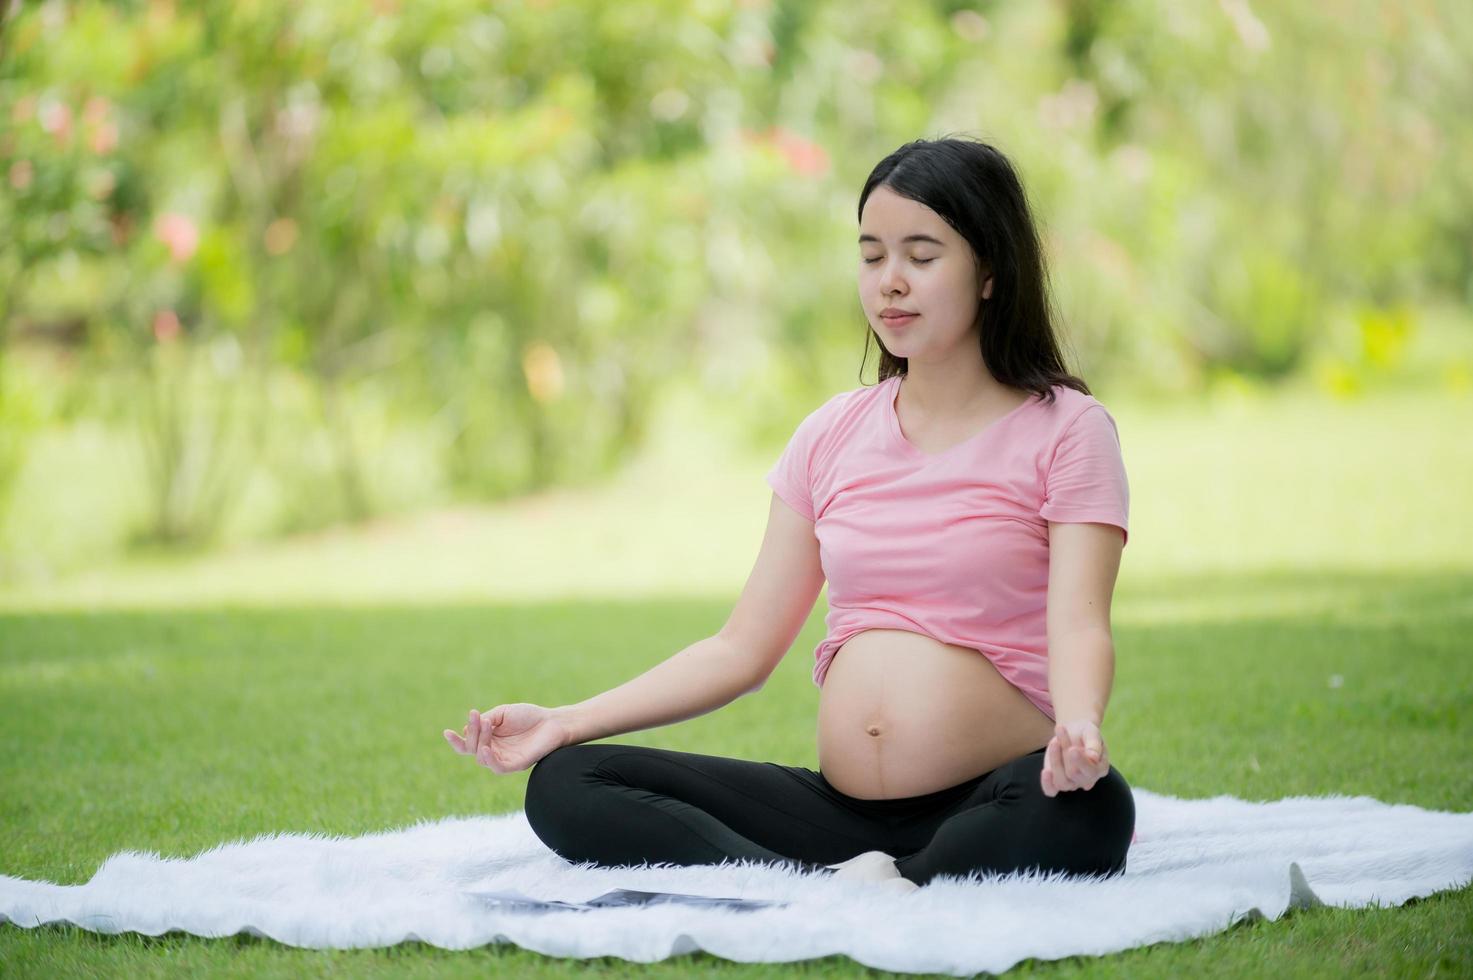 une femme asiatique enceinte se détend avec des exercices d'étirement de yoga dans le parc pour la santé de la mère et de l'enfant à naître photo